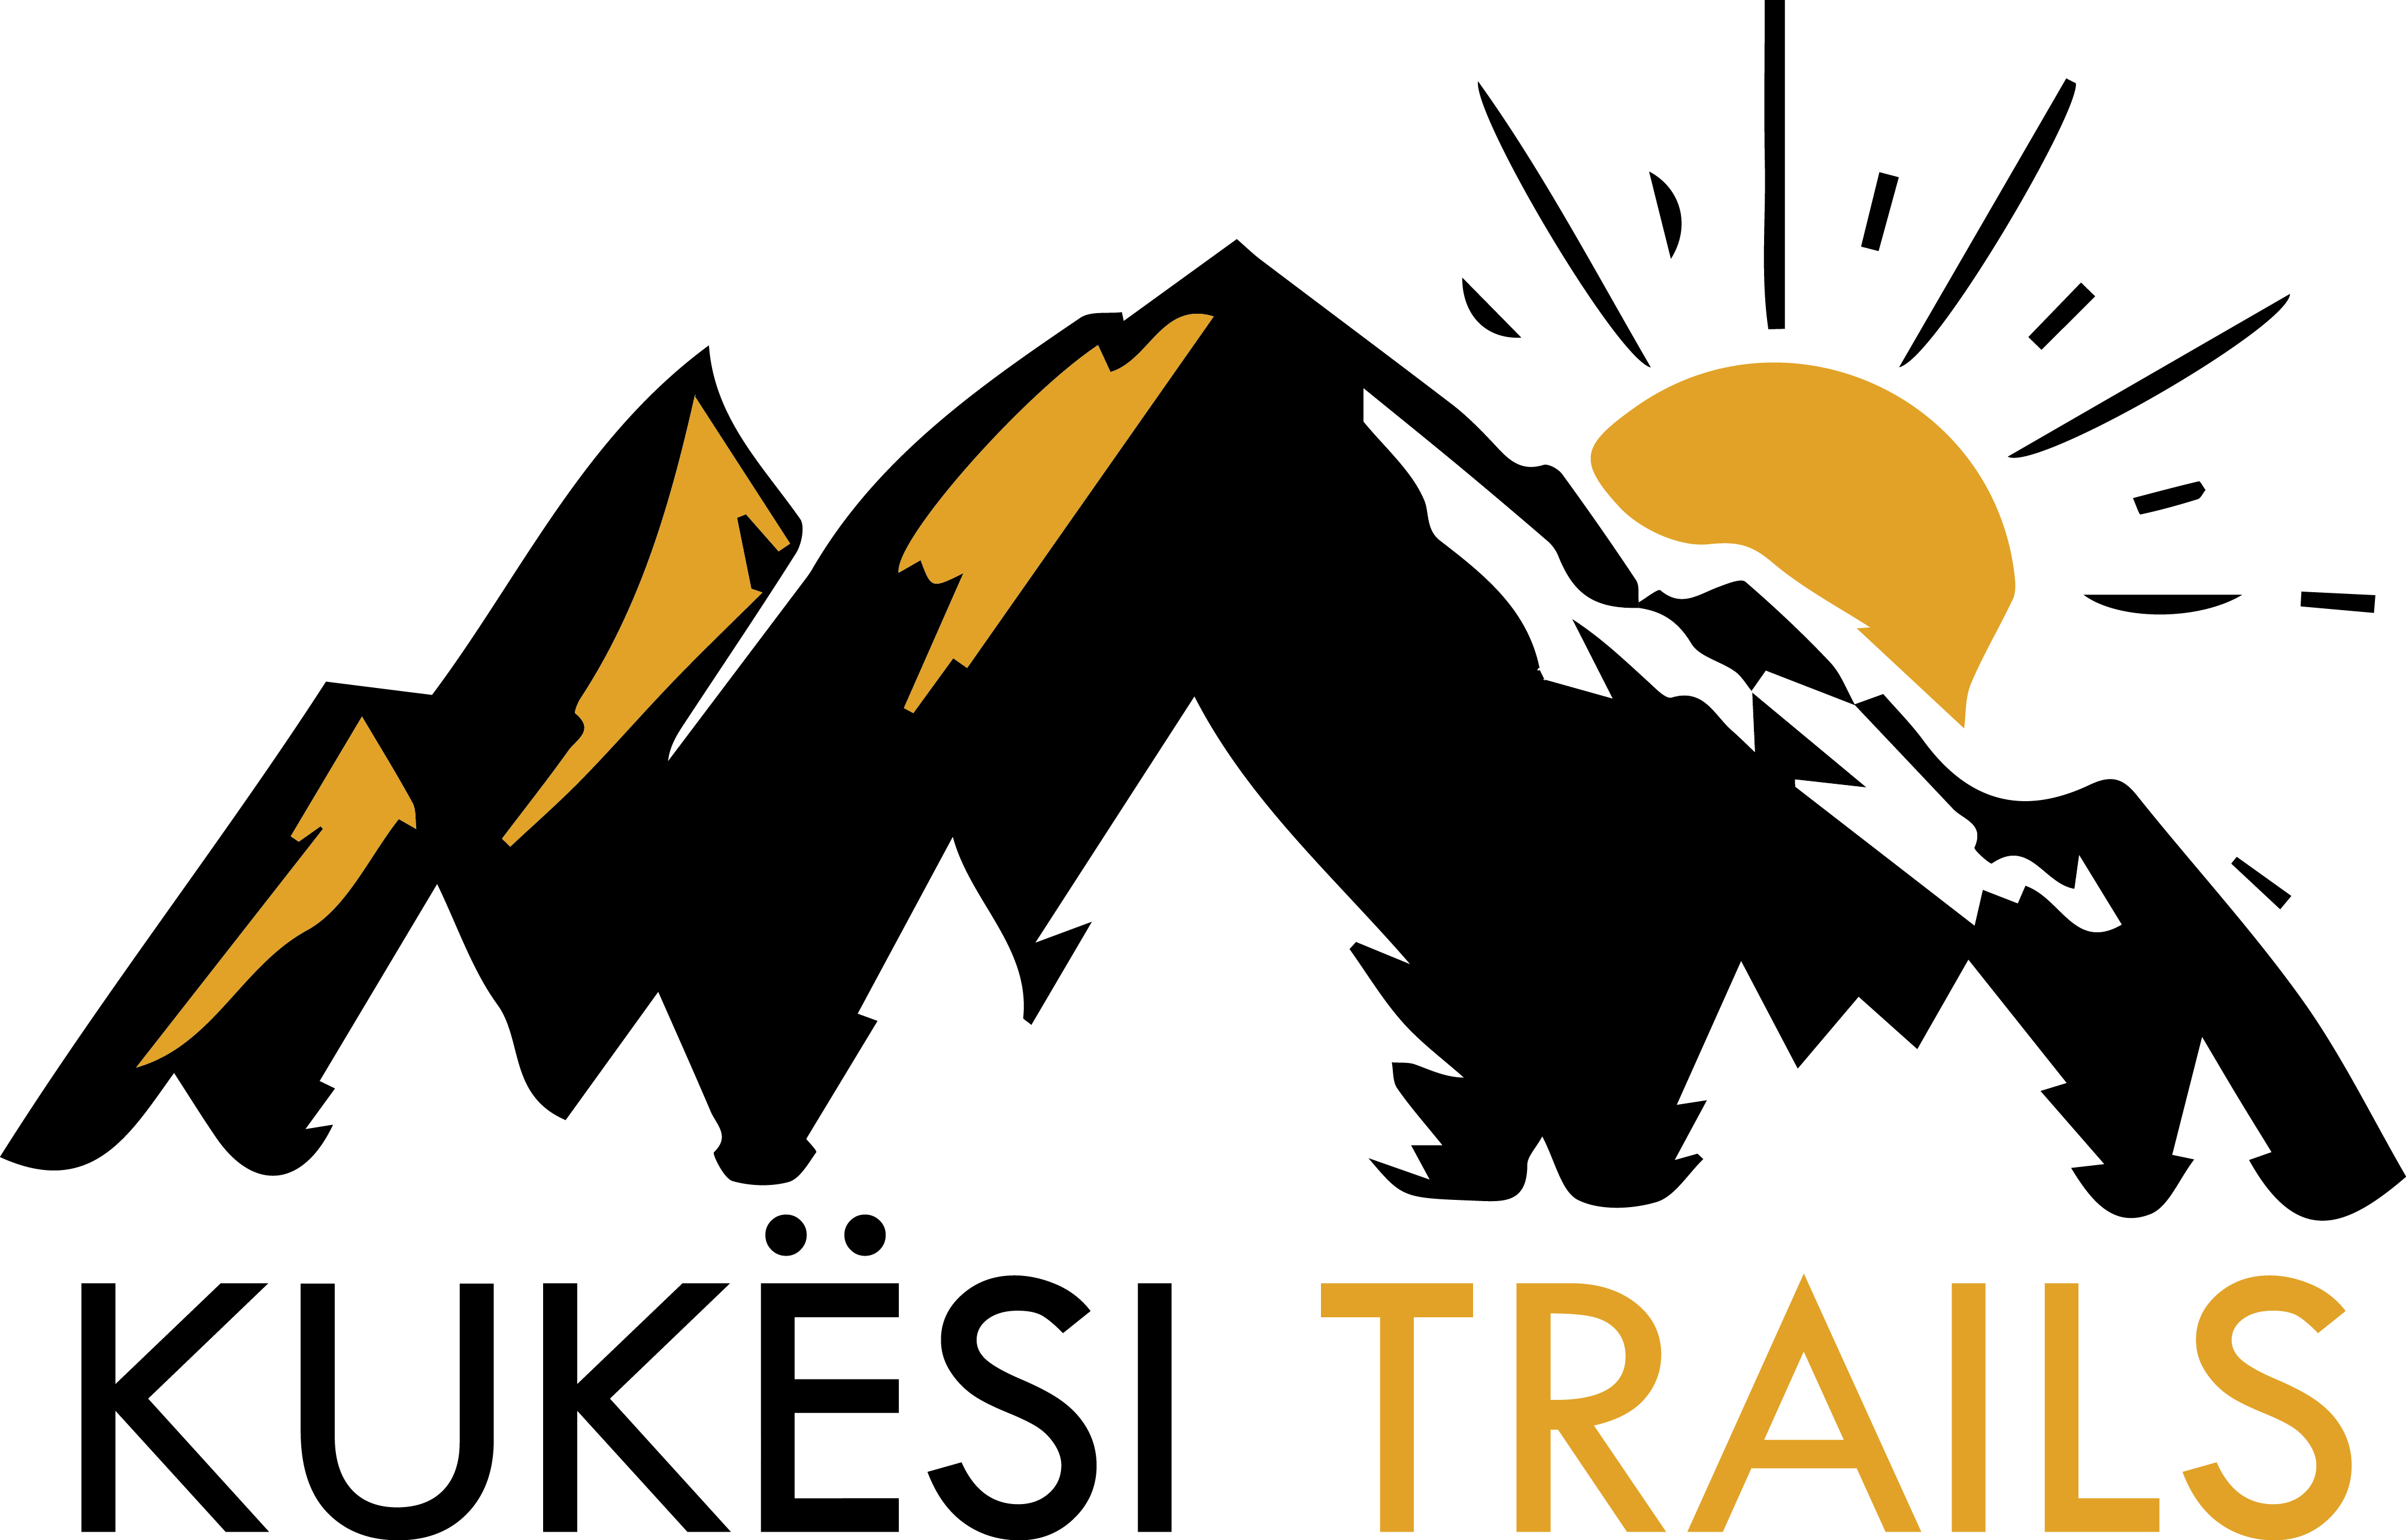 Kukesi Trails (logo)